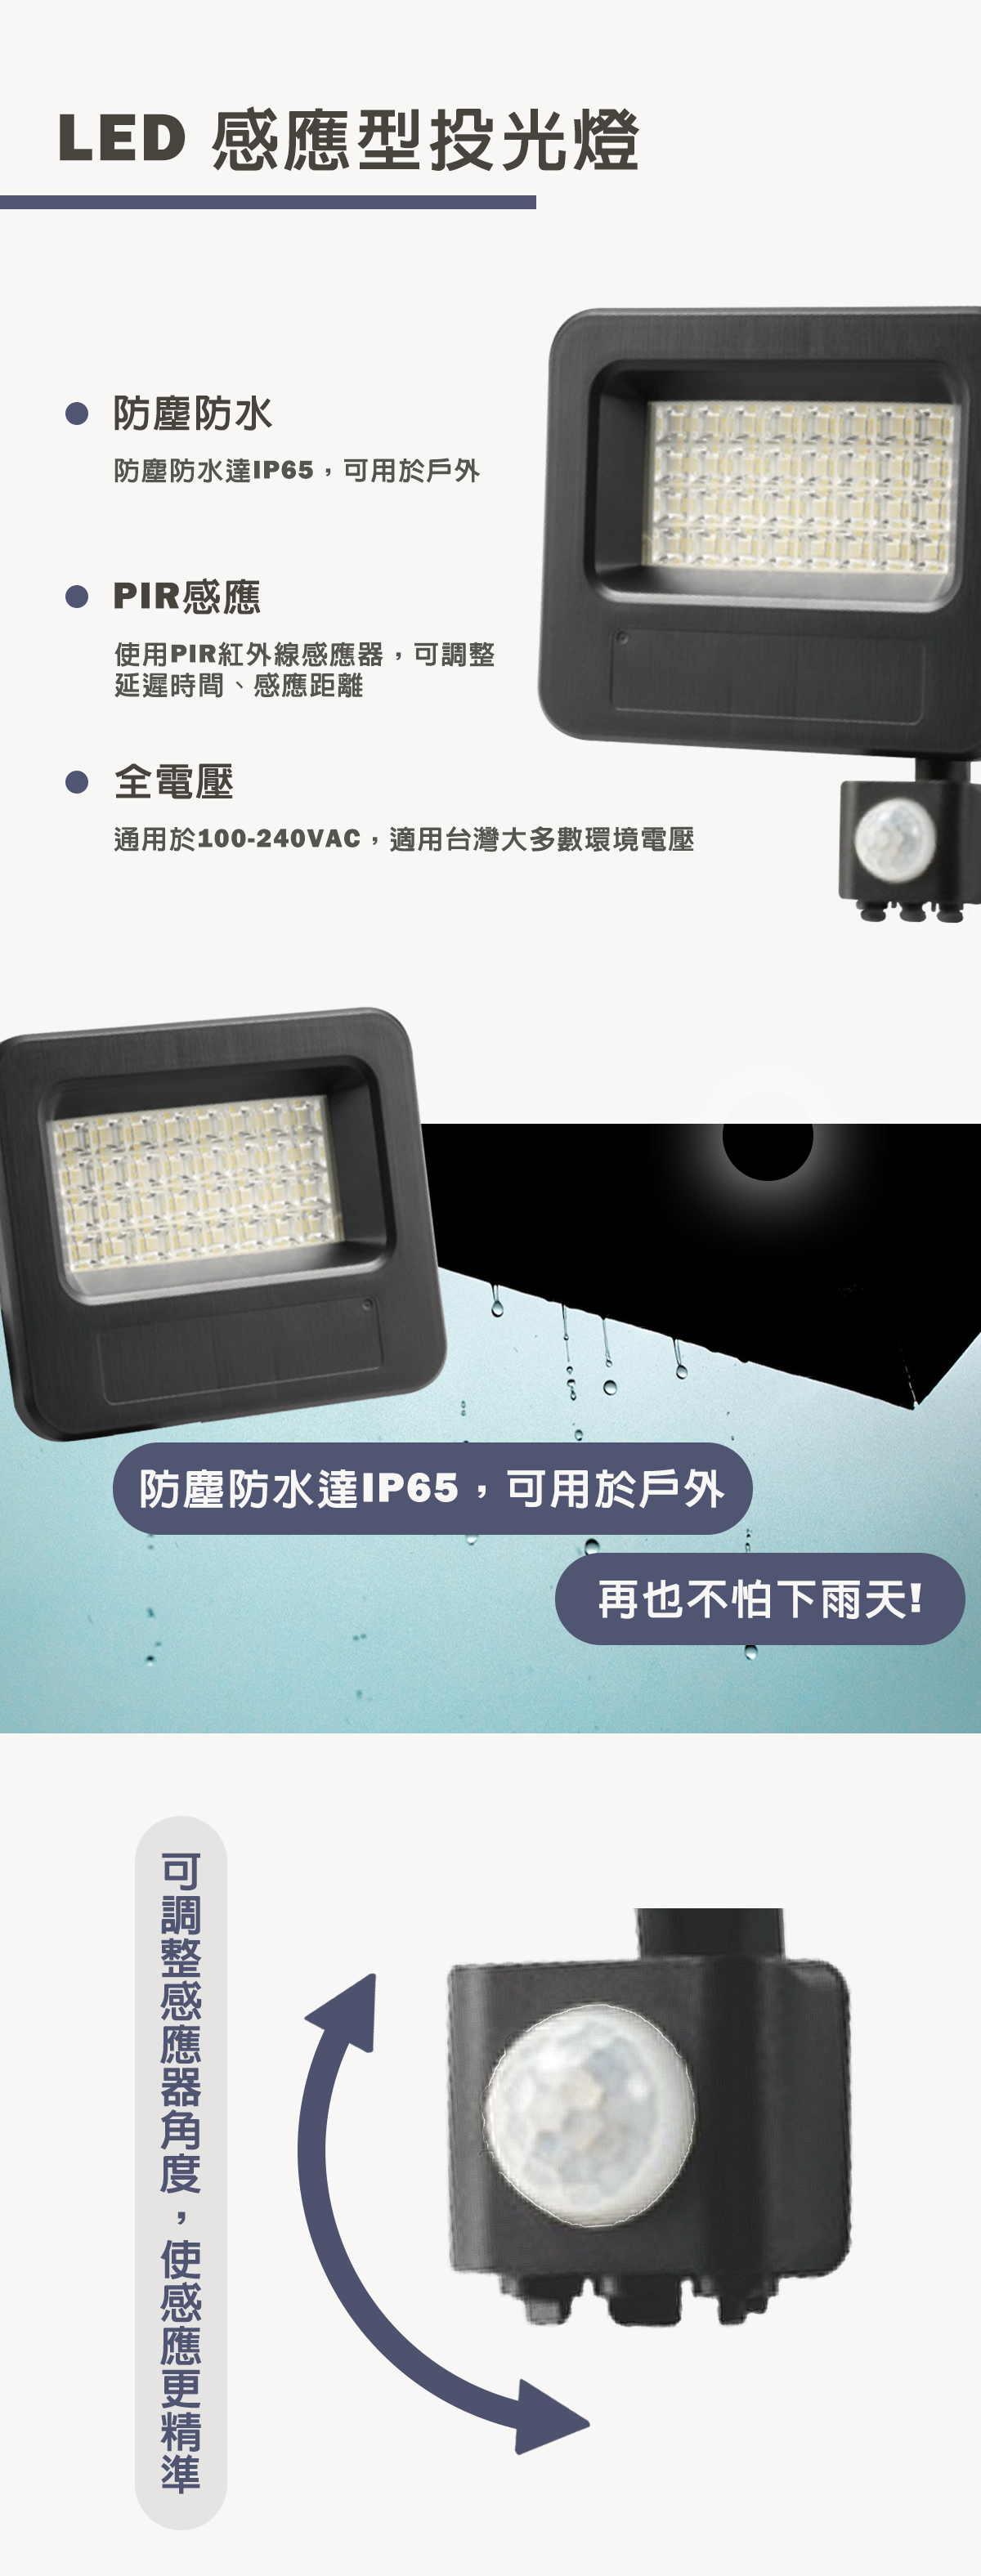 【億光】LED 30W 50W 紅外線 感應投光燈 全電壓 防水IP65 